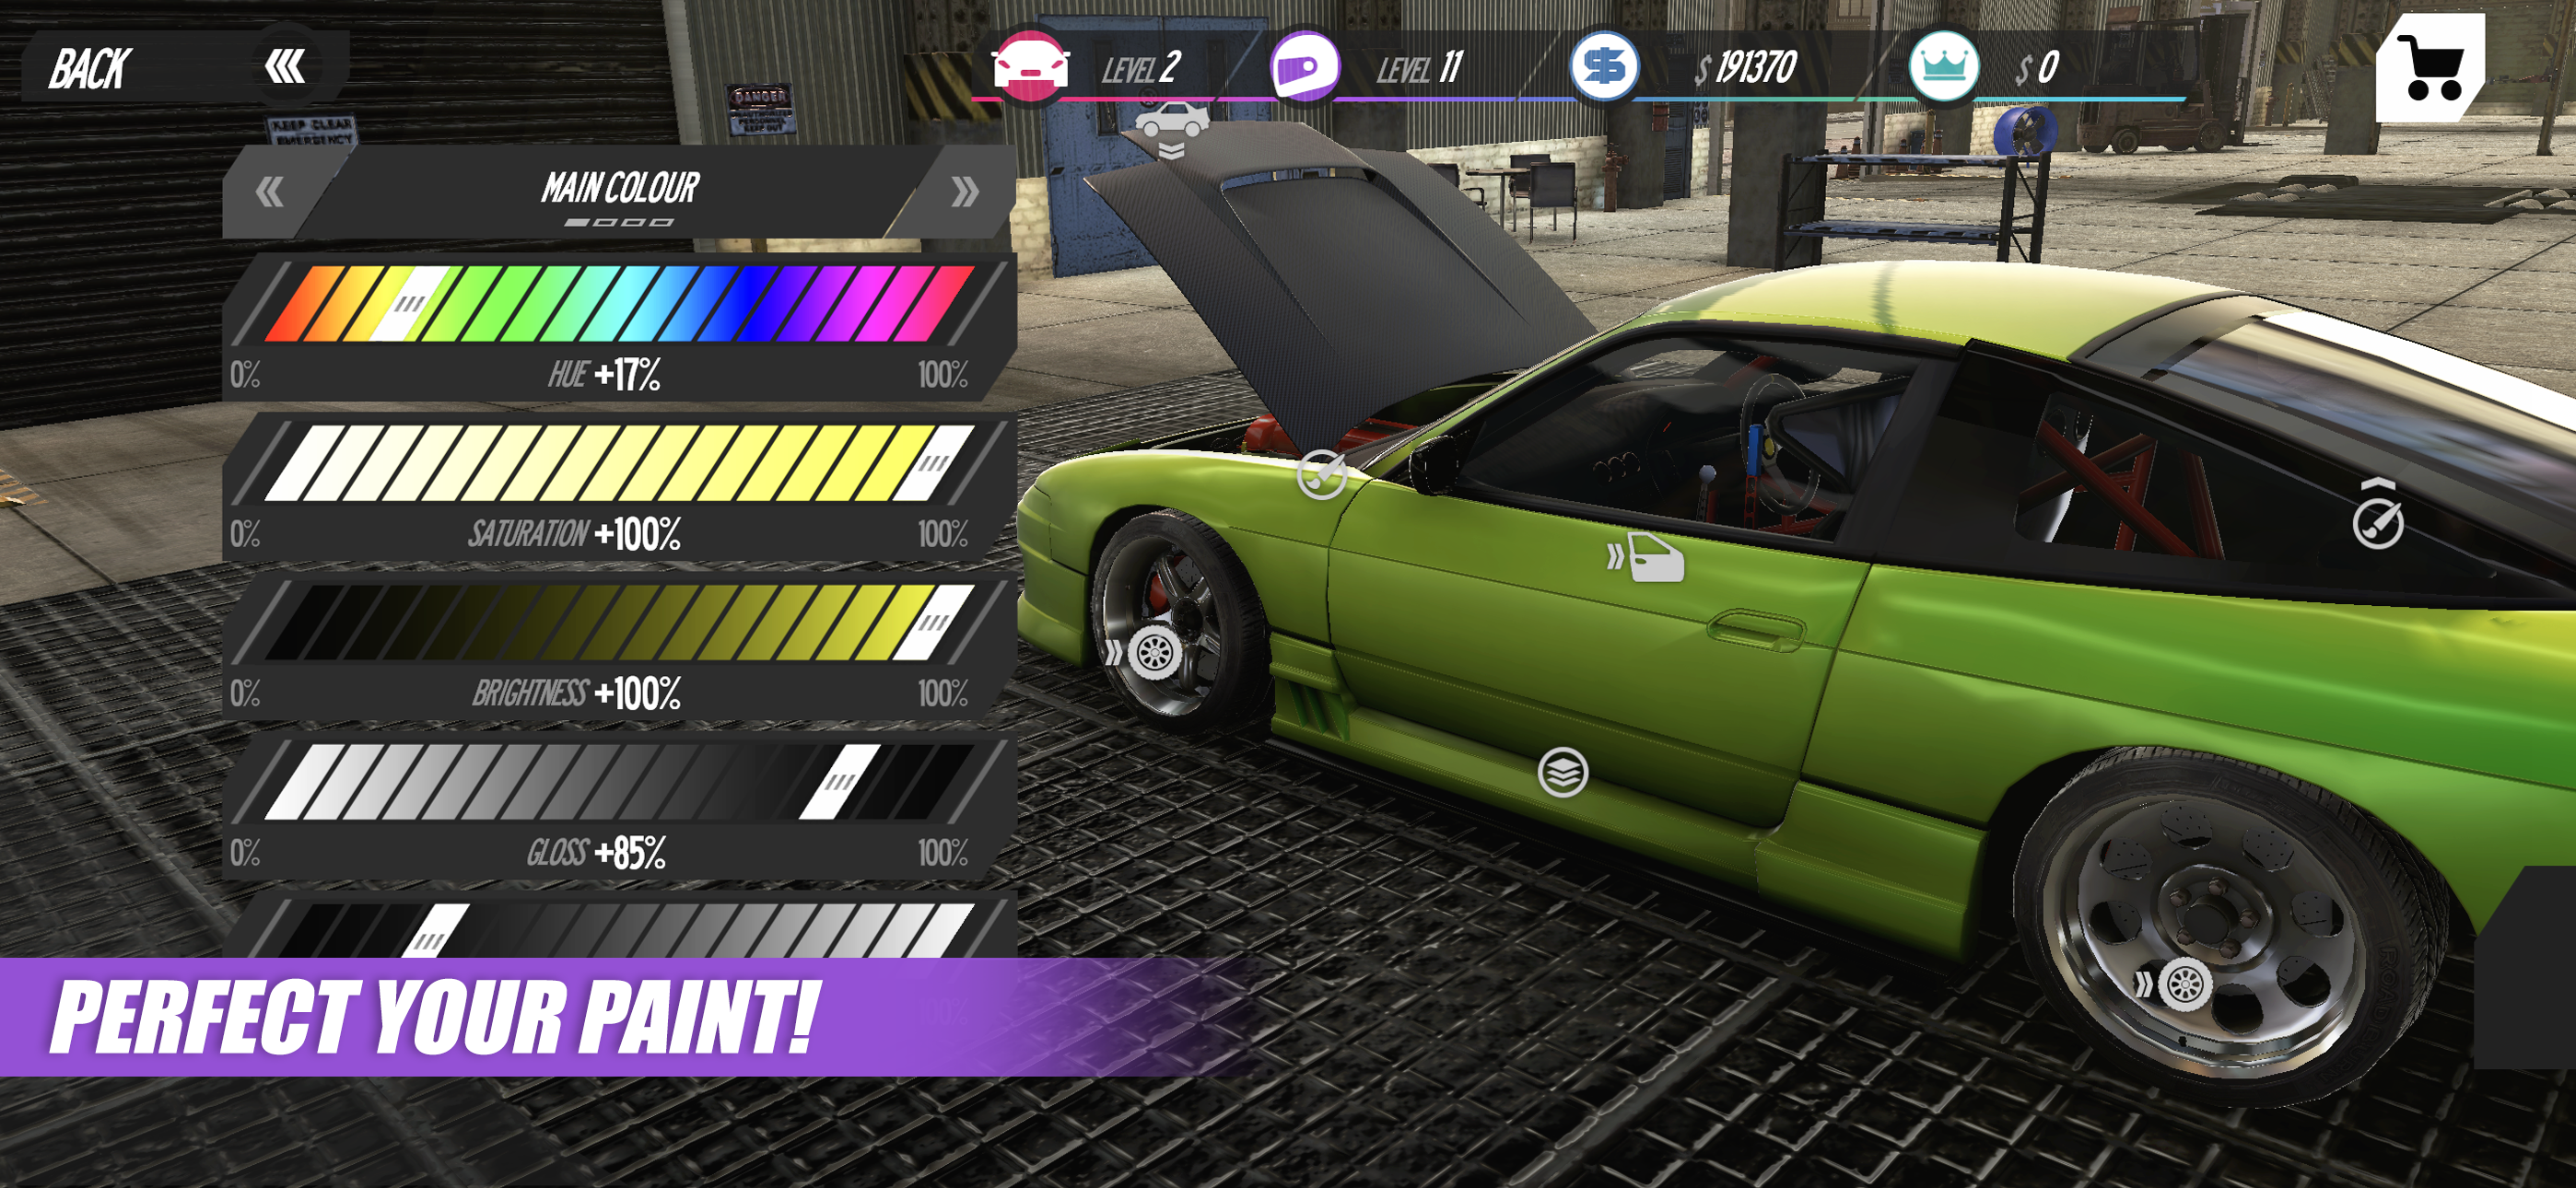 Drift Runner screenshot game